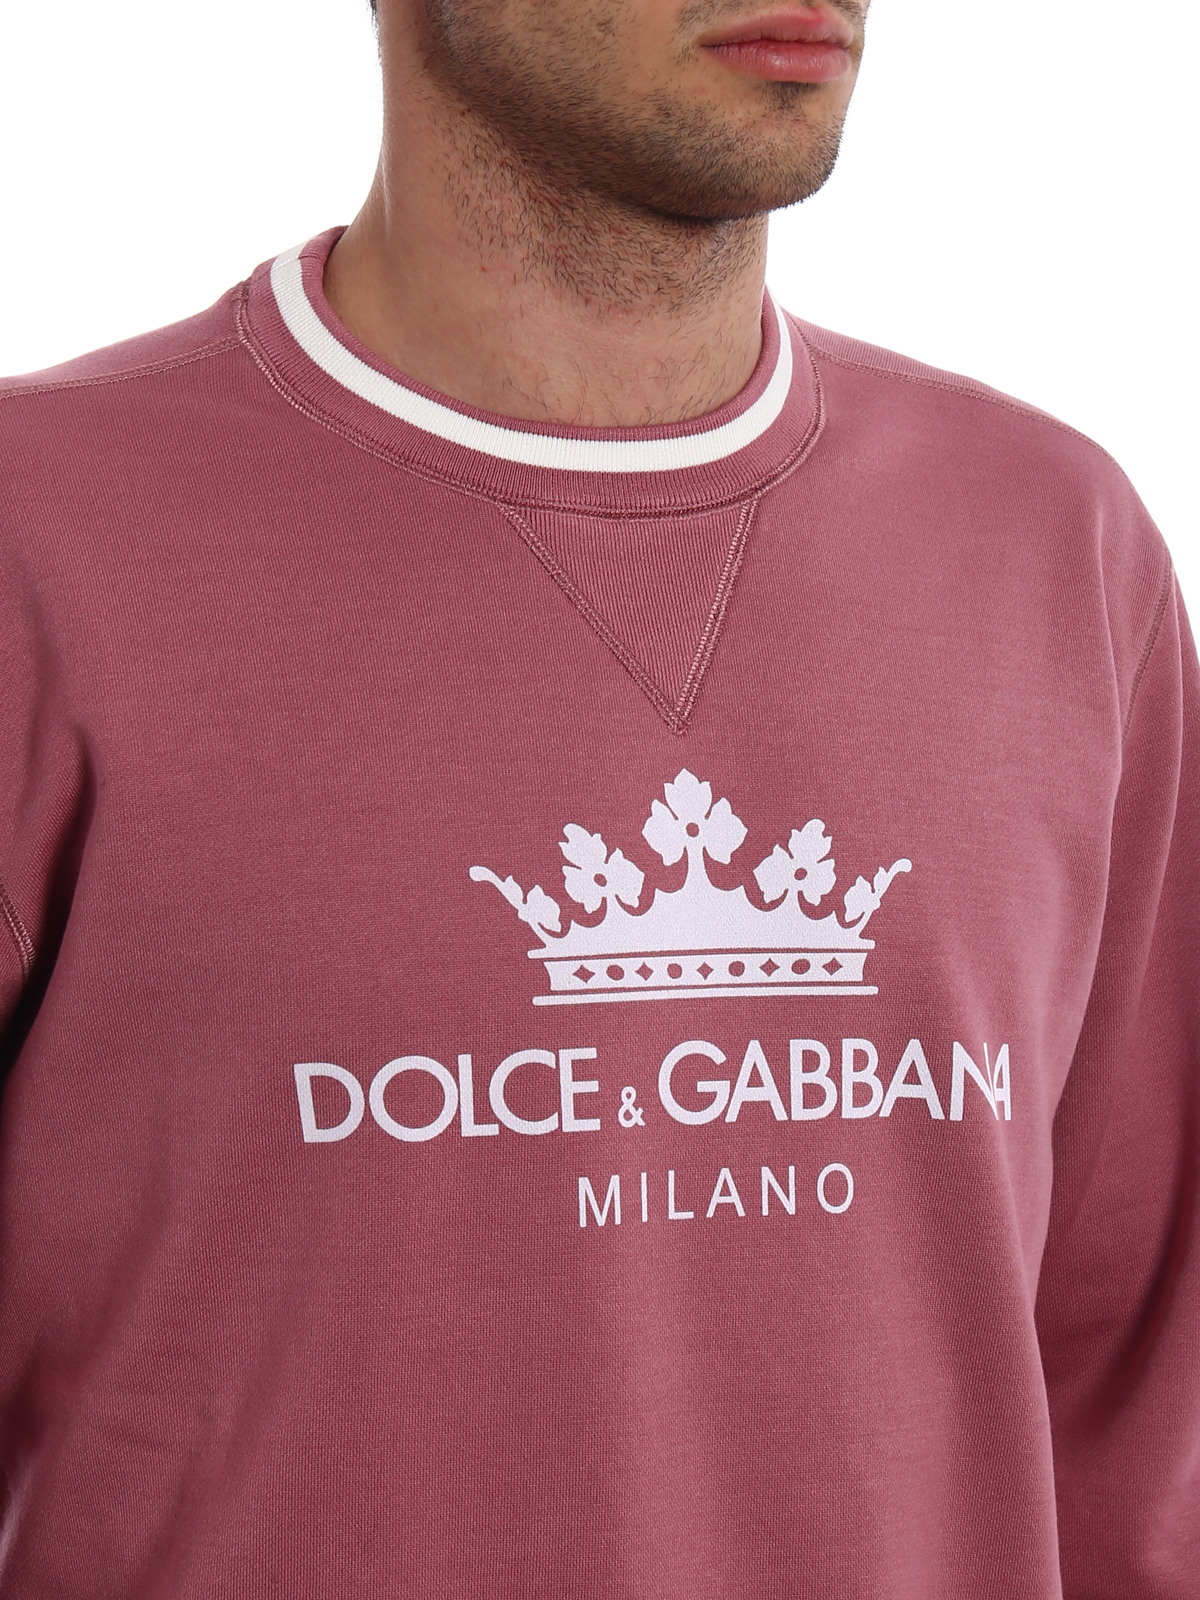 dolce and gabbana crown logo